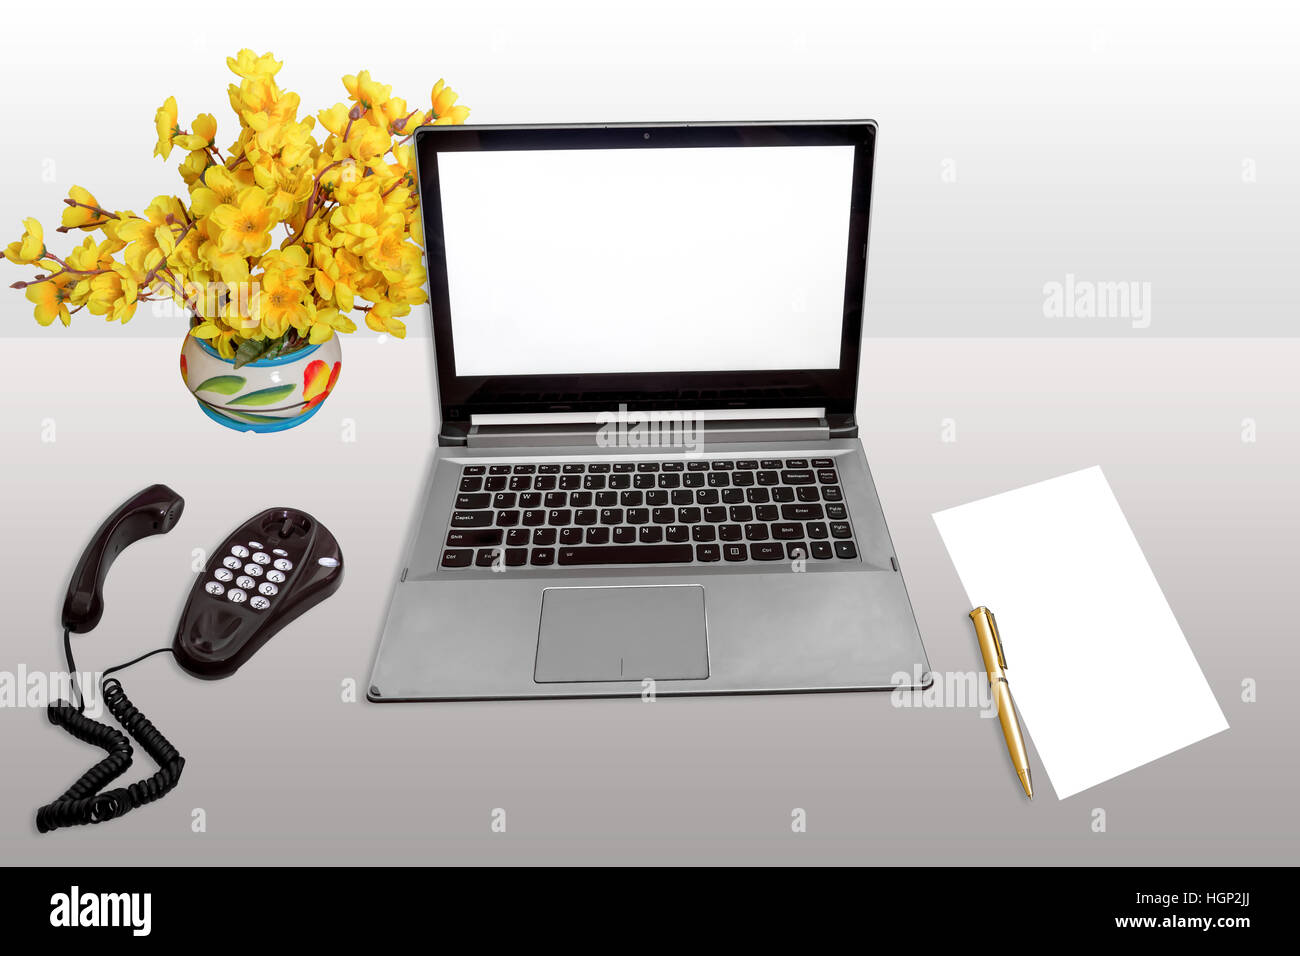 Lieu de travail avec ordinateur portable écran blanc, téléphone de bureau, de papier vierge et un stylo blanc isolé. Banque D'Images